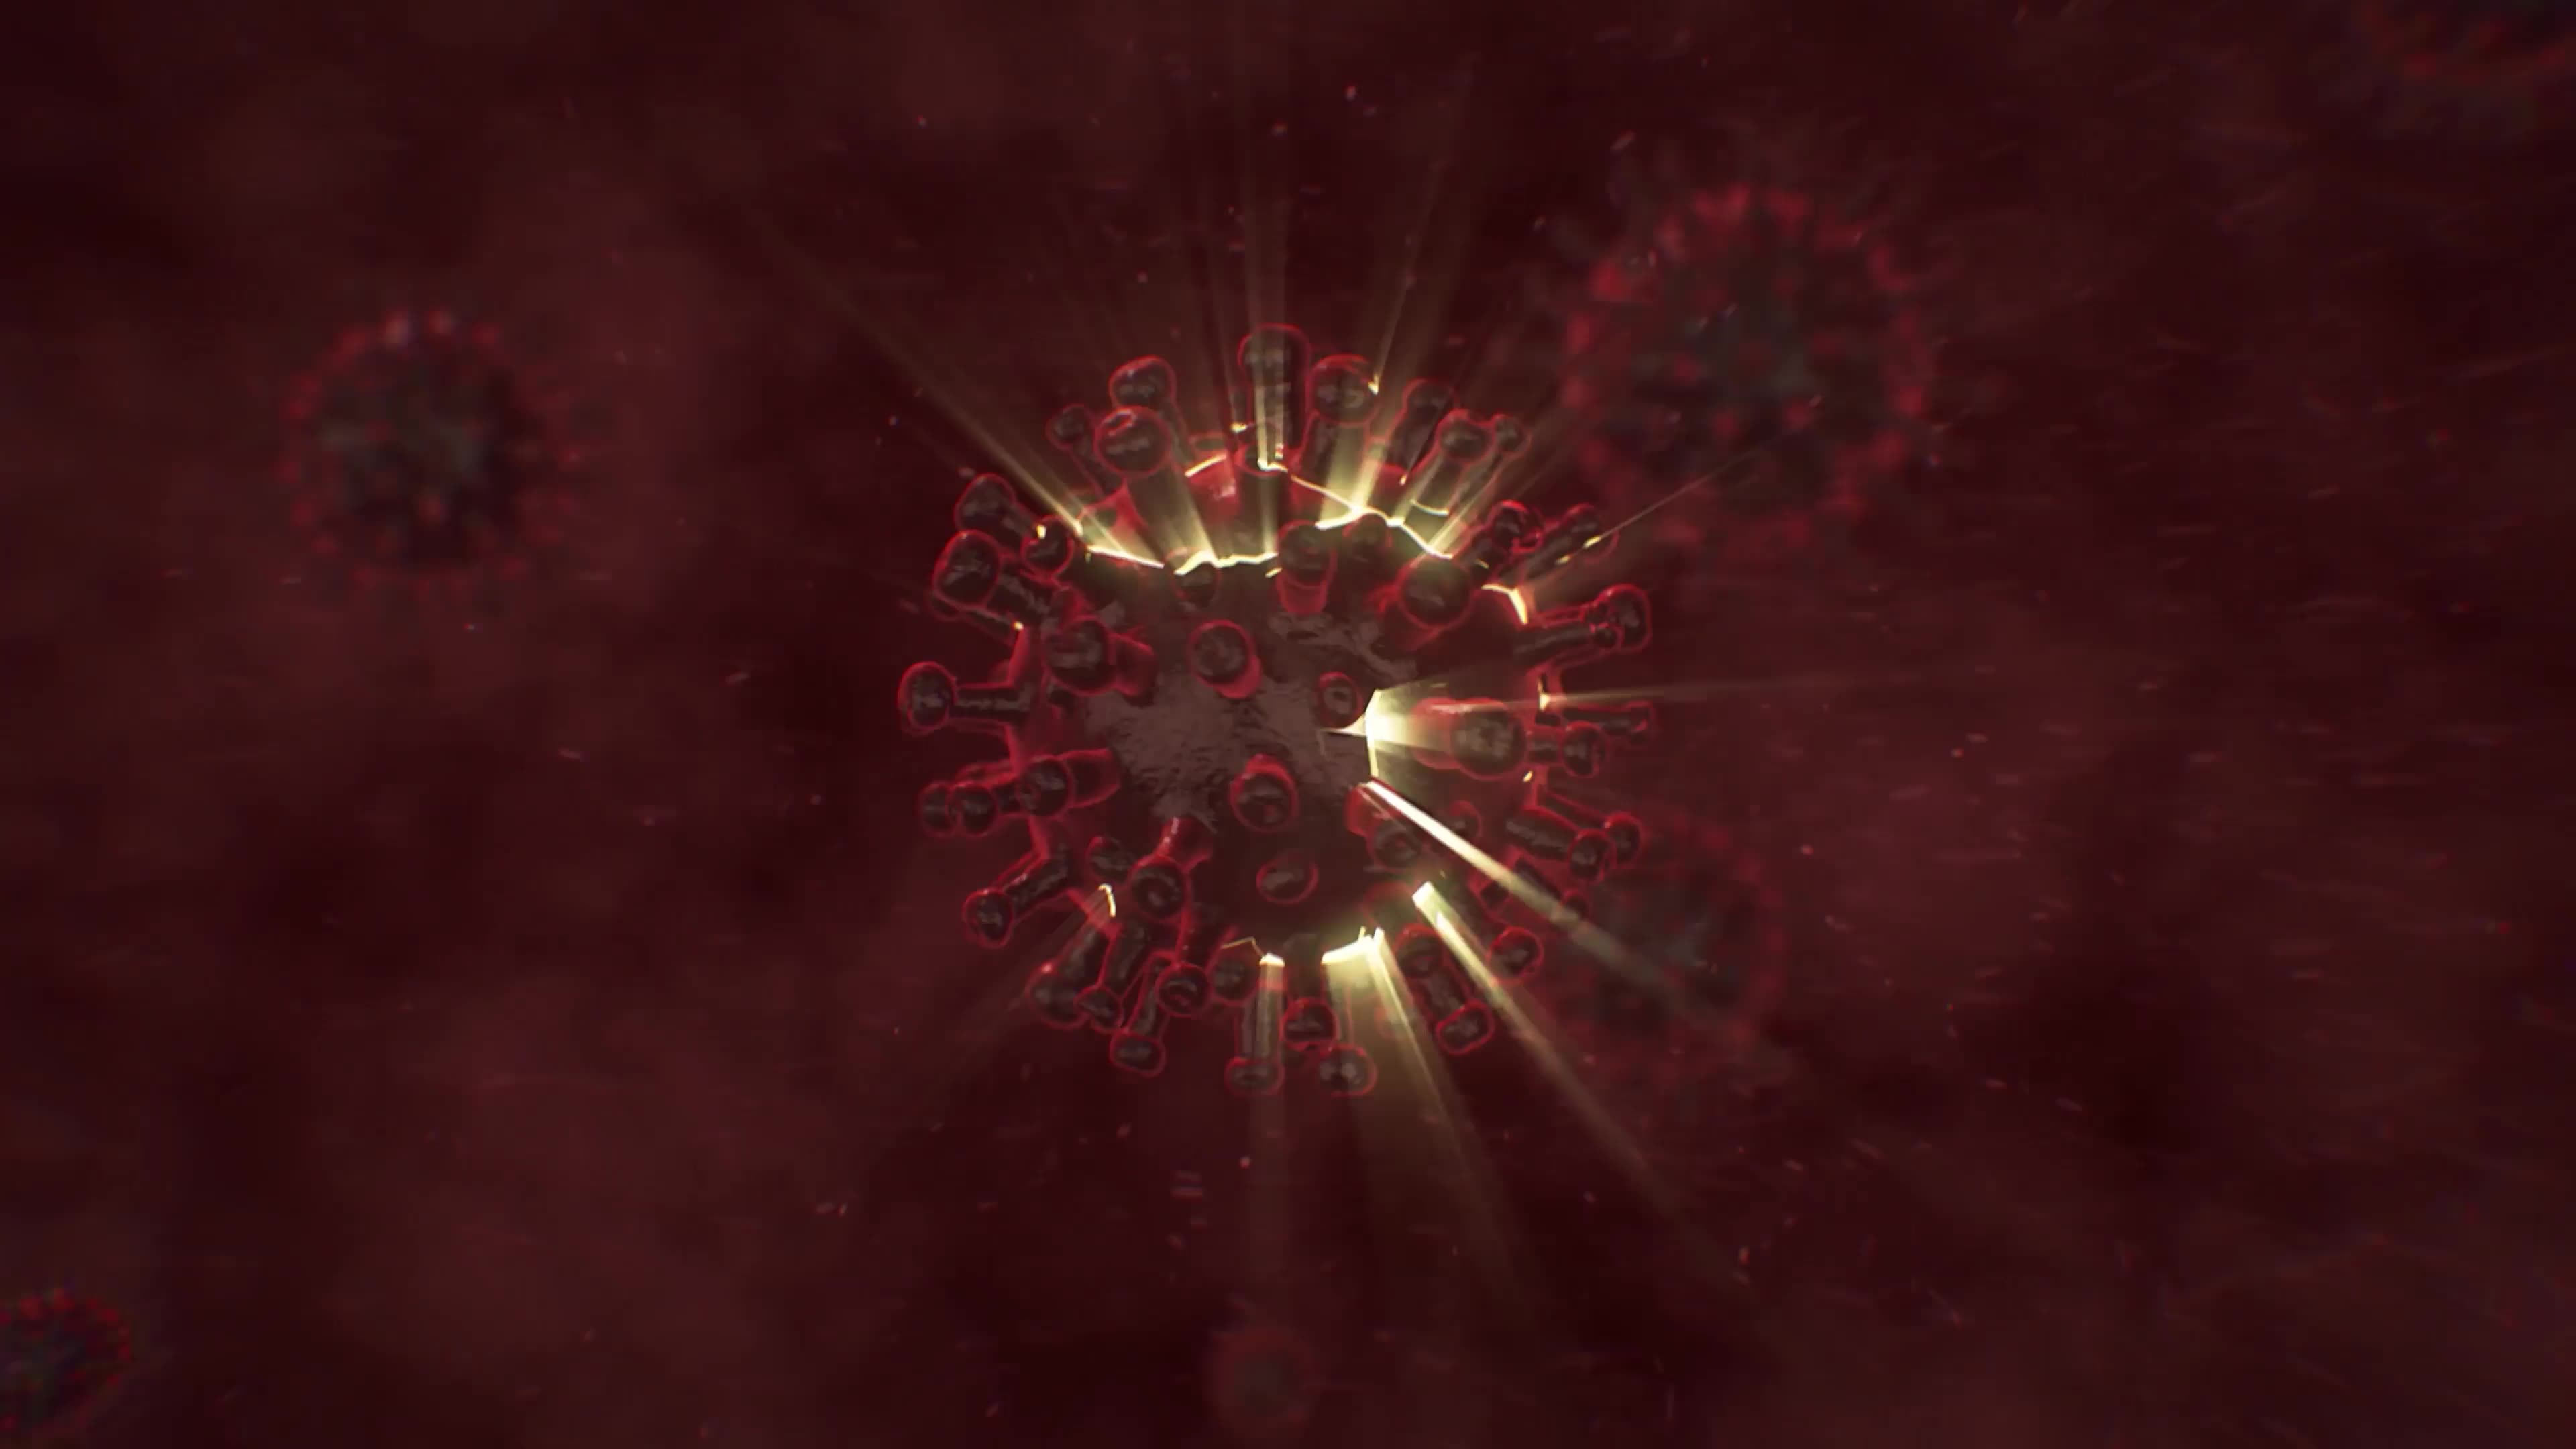 Virus Destruction Logo Reveal Videohive 26328449 Premiere Pro Image 5